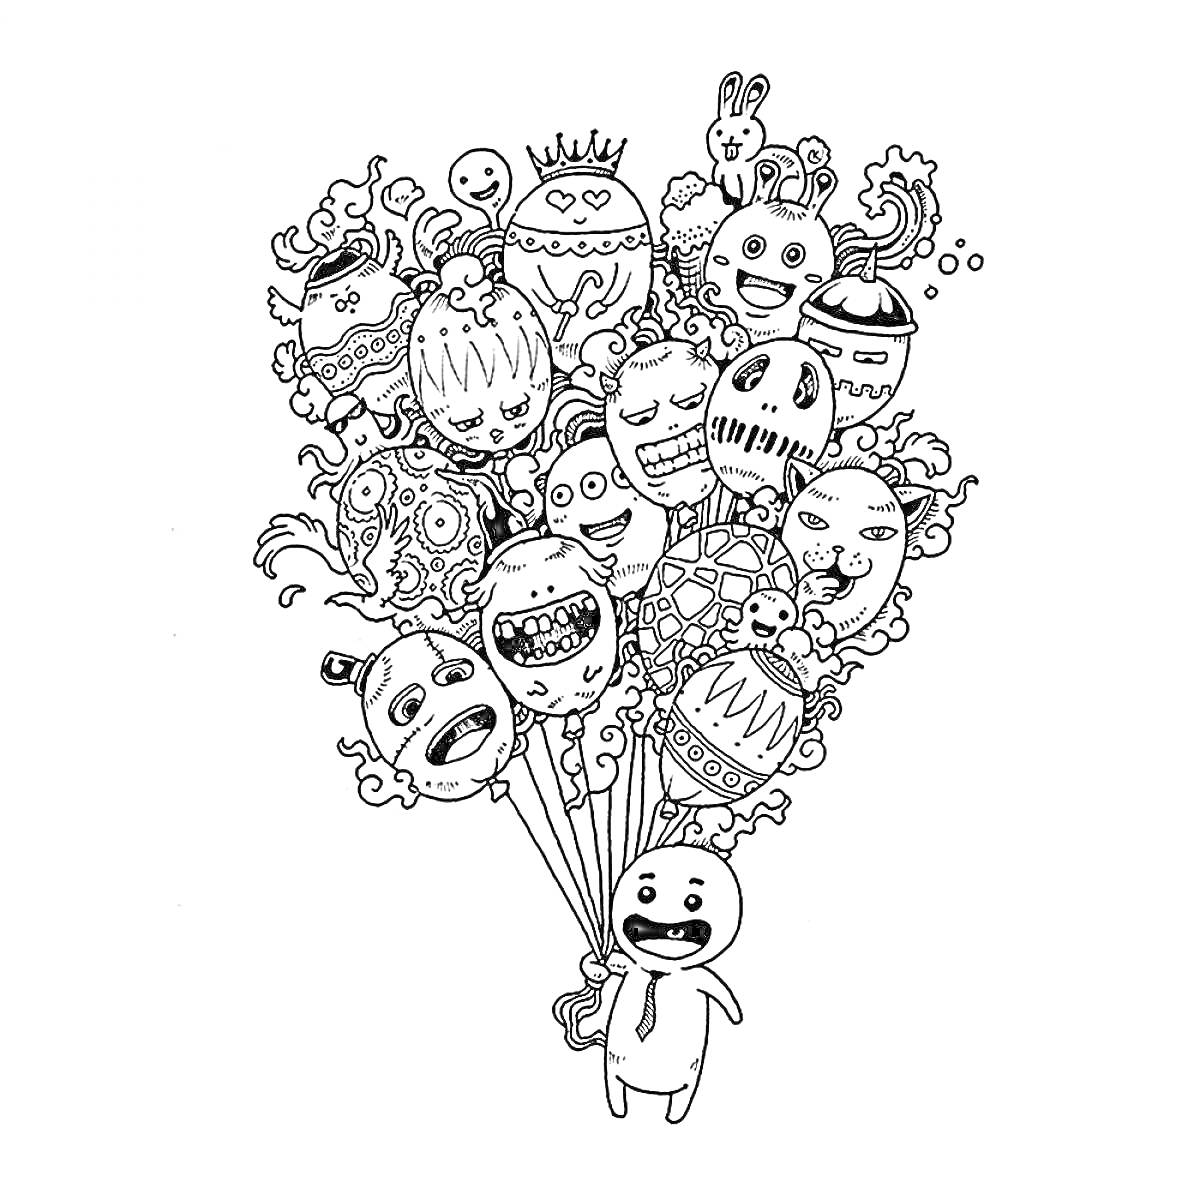 Раскраска Персонаж с воздушными шарами-дудлами, на шарах монстры, животные, корона, сердечки, звёздочки